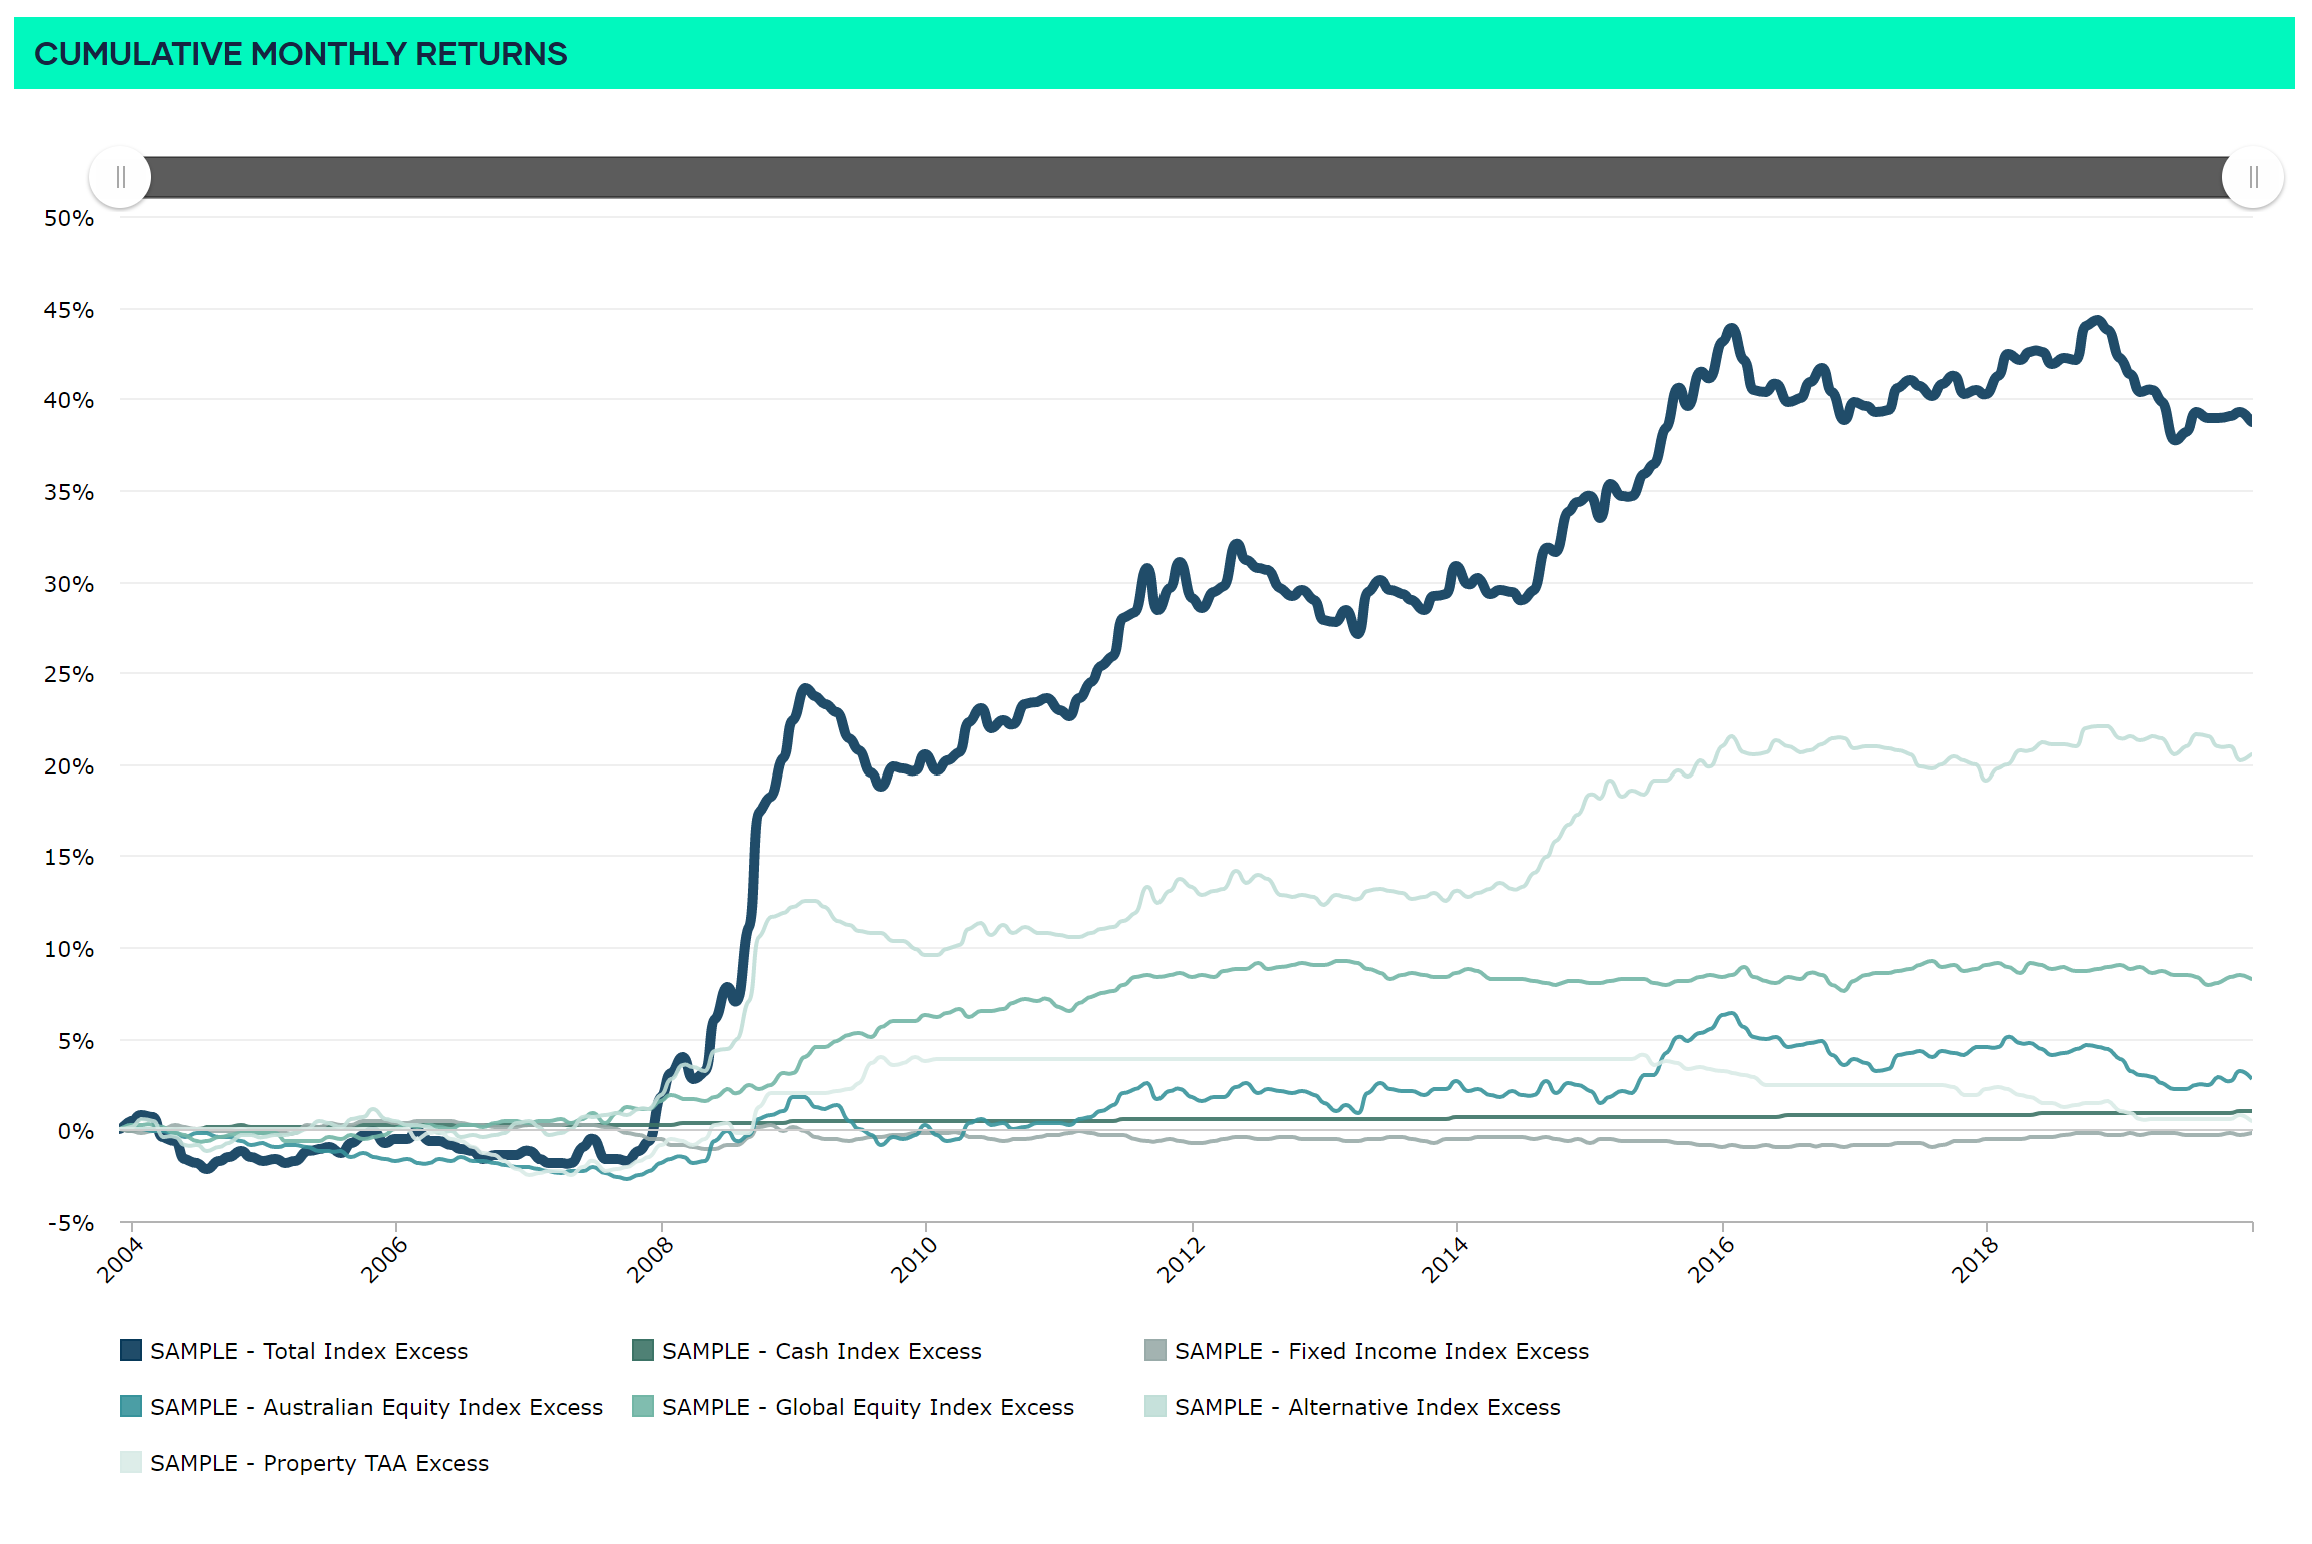 Bitcoin Charts by year - 2014 Bitcoin price
